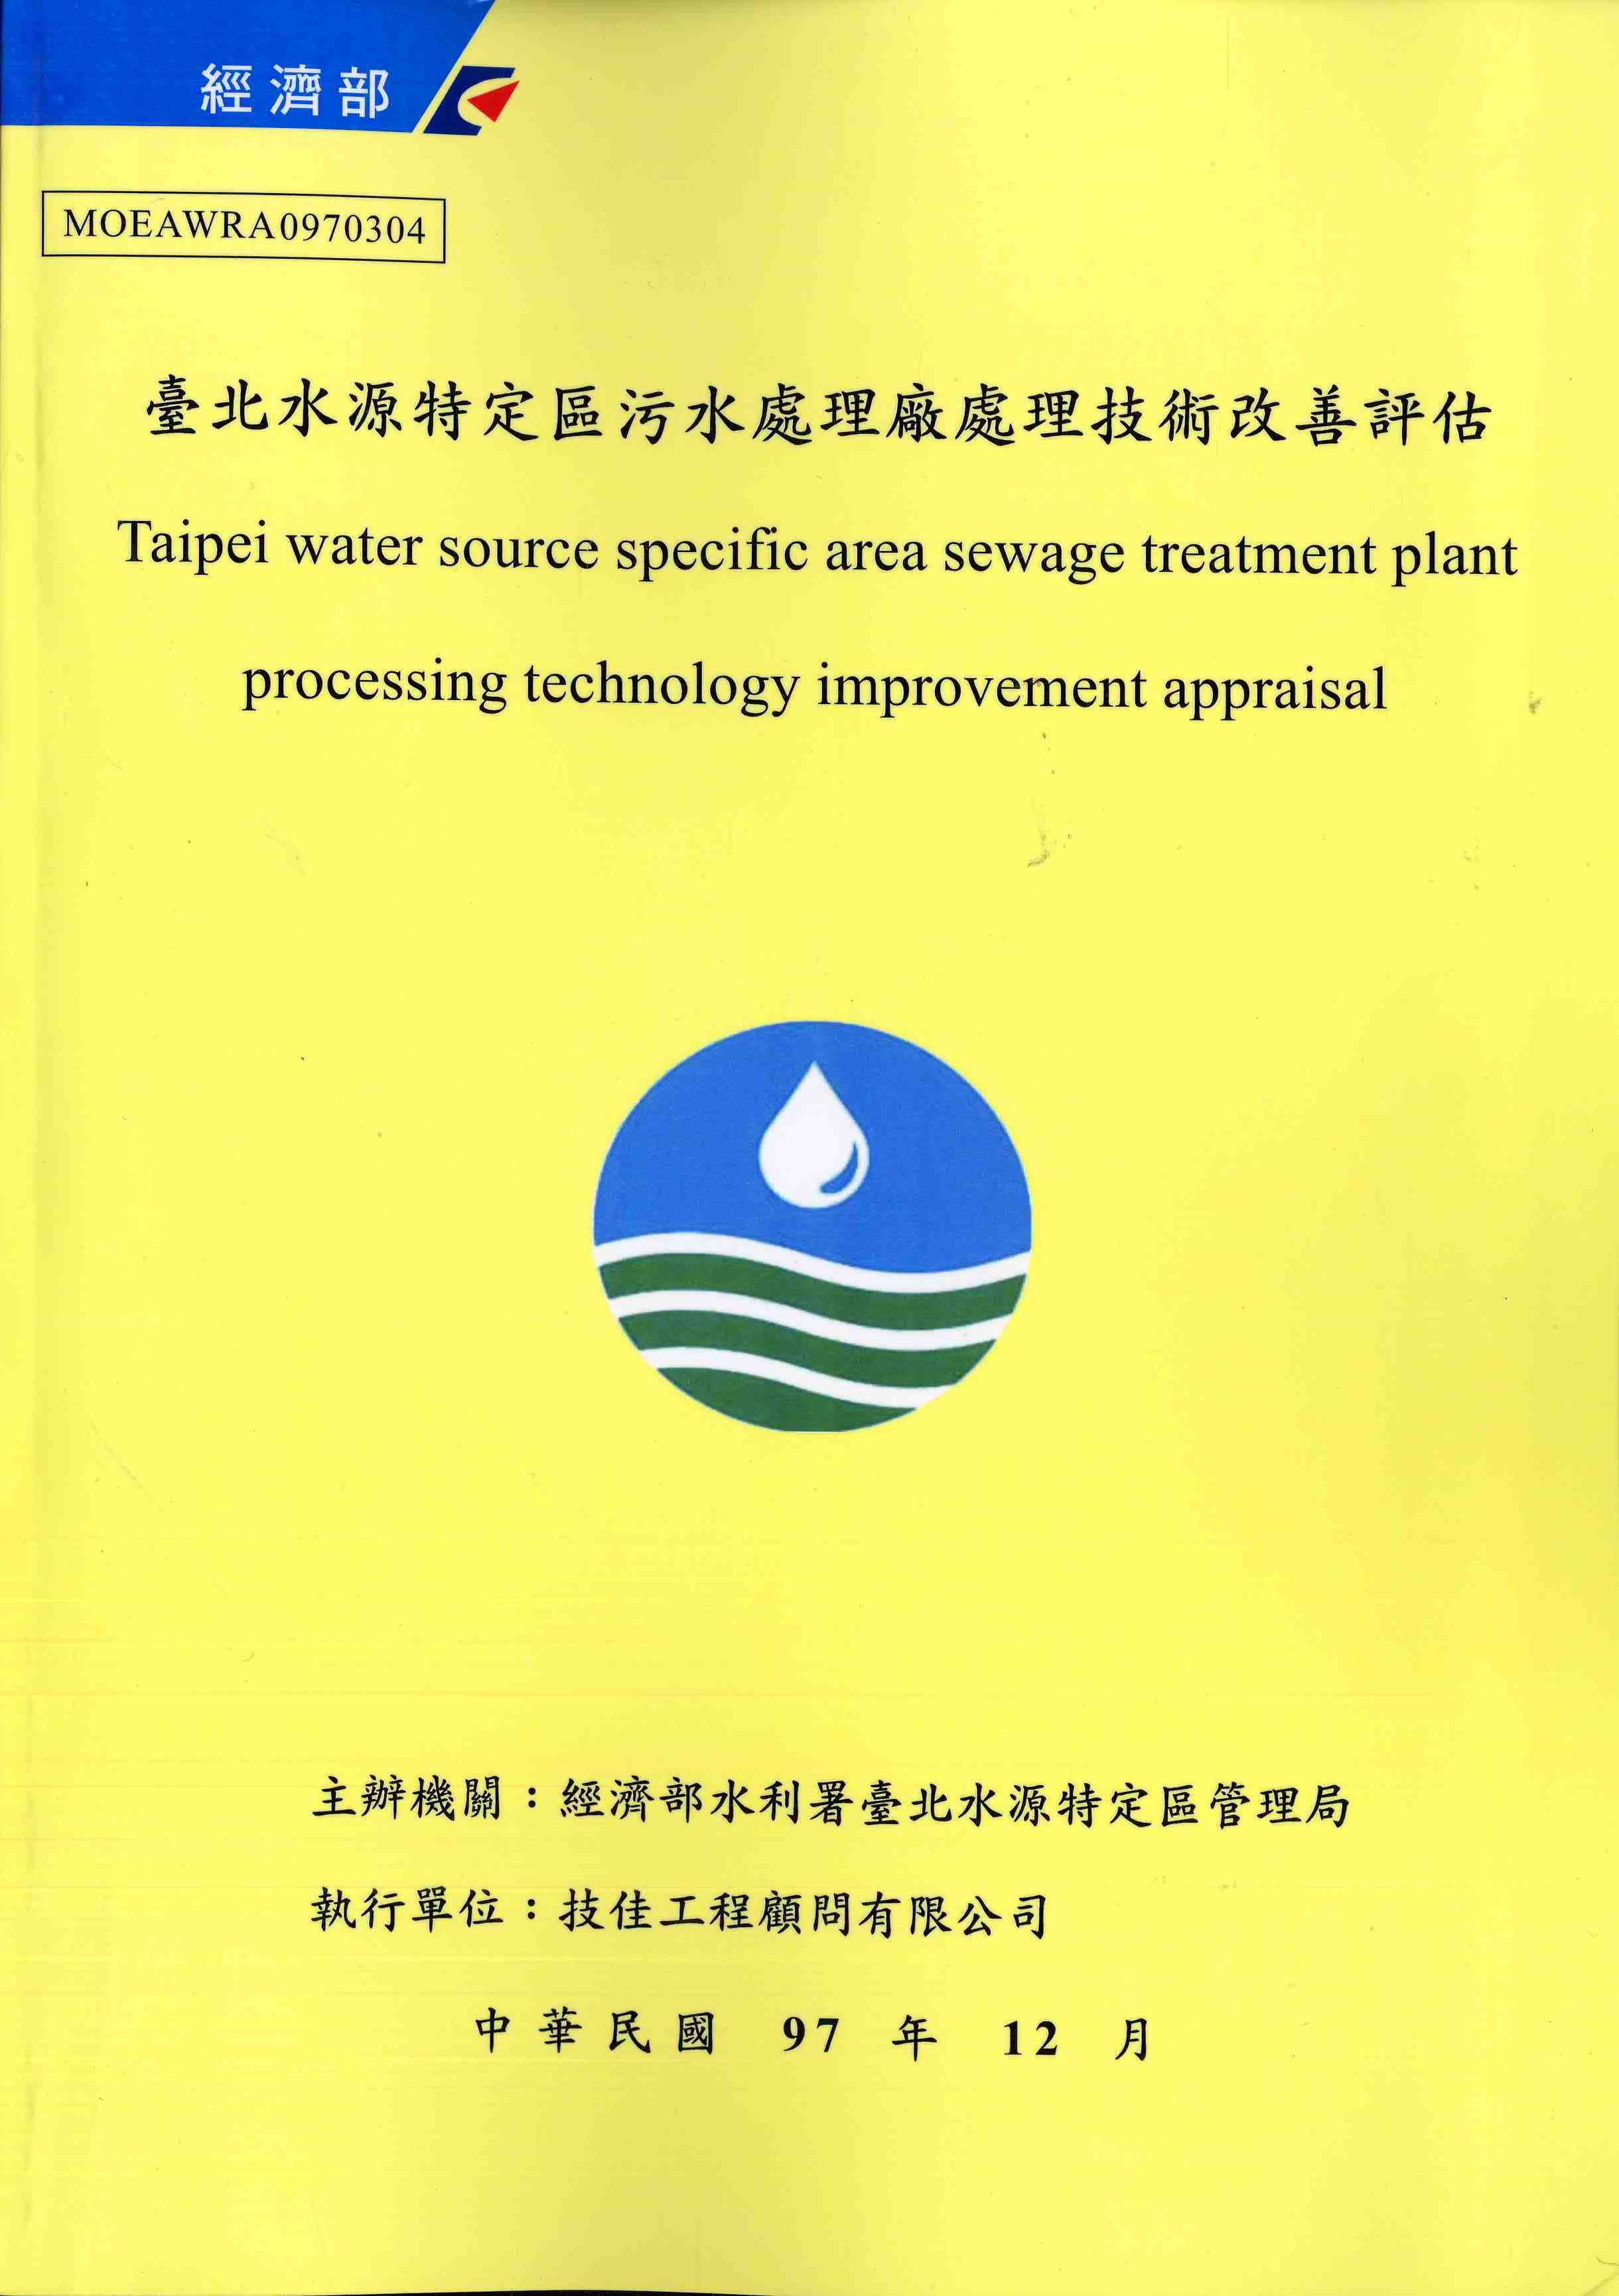 臺北水源特定區污水處理廠處理技術改善評估